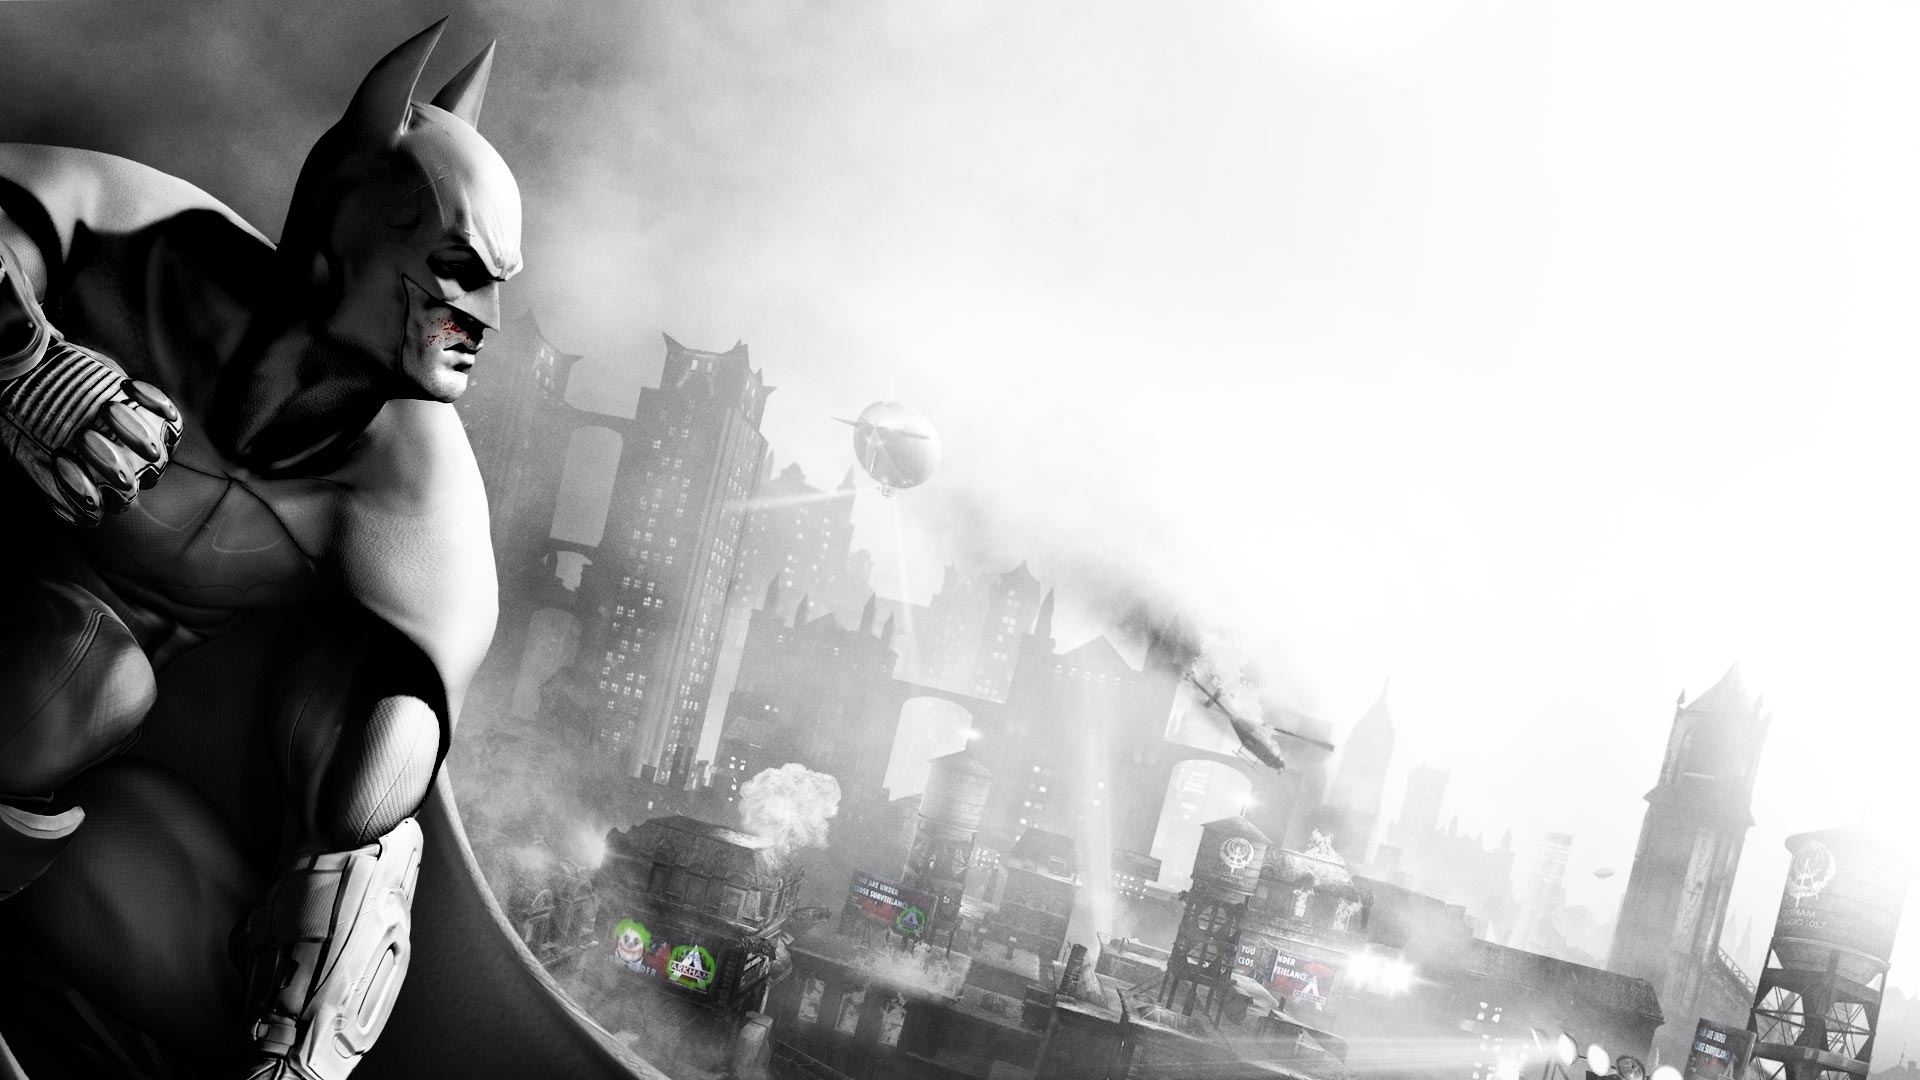 fond d'écran batman arkham city,homme chauve souris,personnage fictif,super héros,ligue de justice,noir et blanc